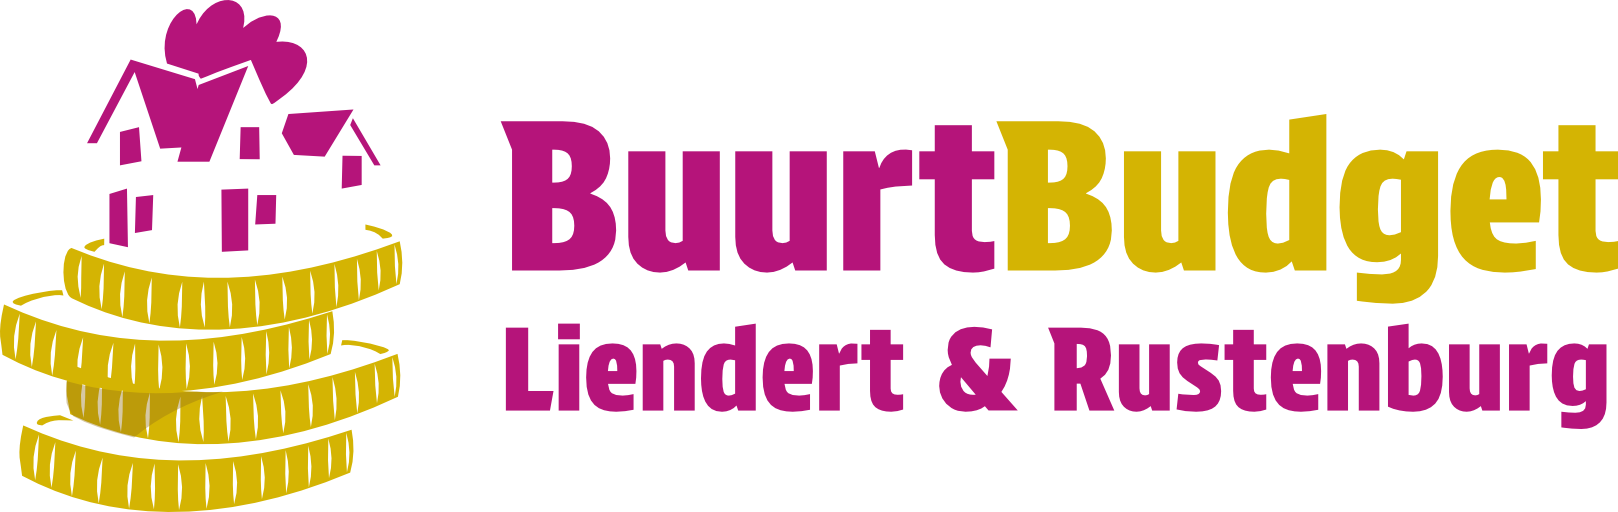 buurtbudget Liendert Rustenburg logo